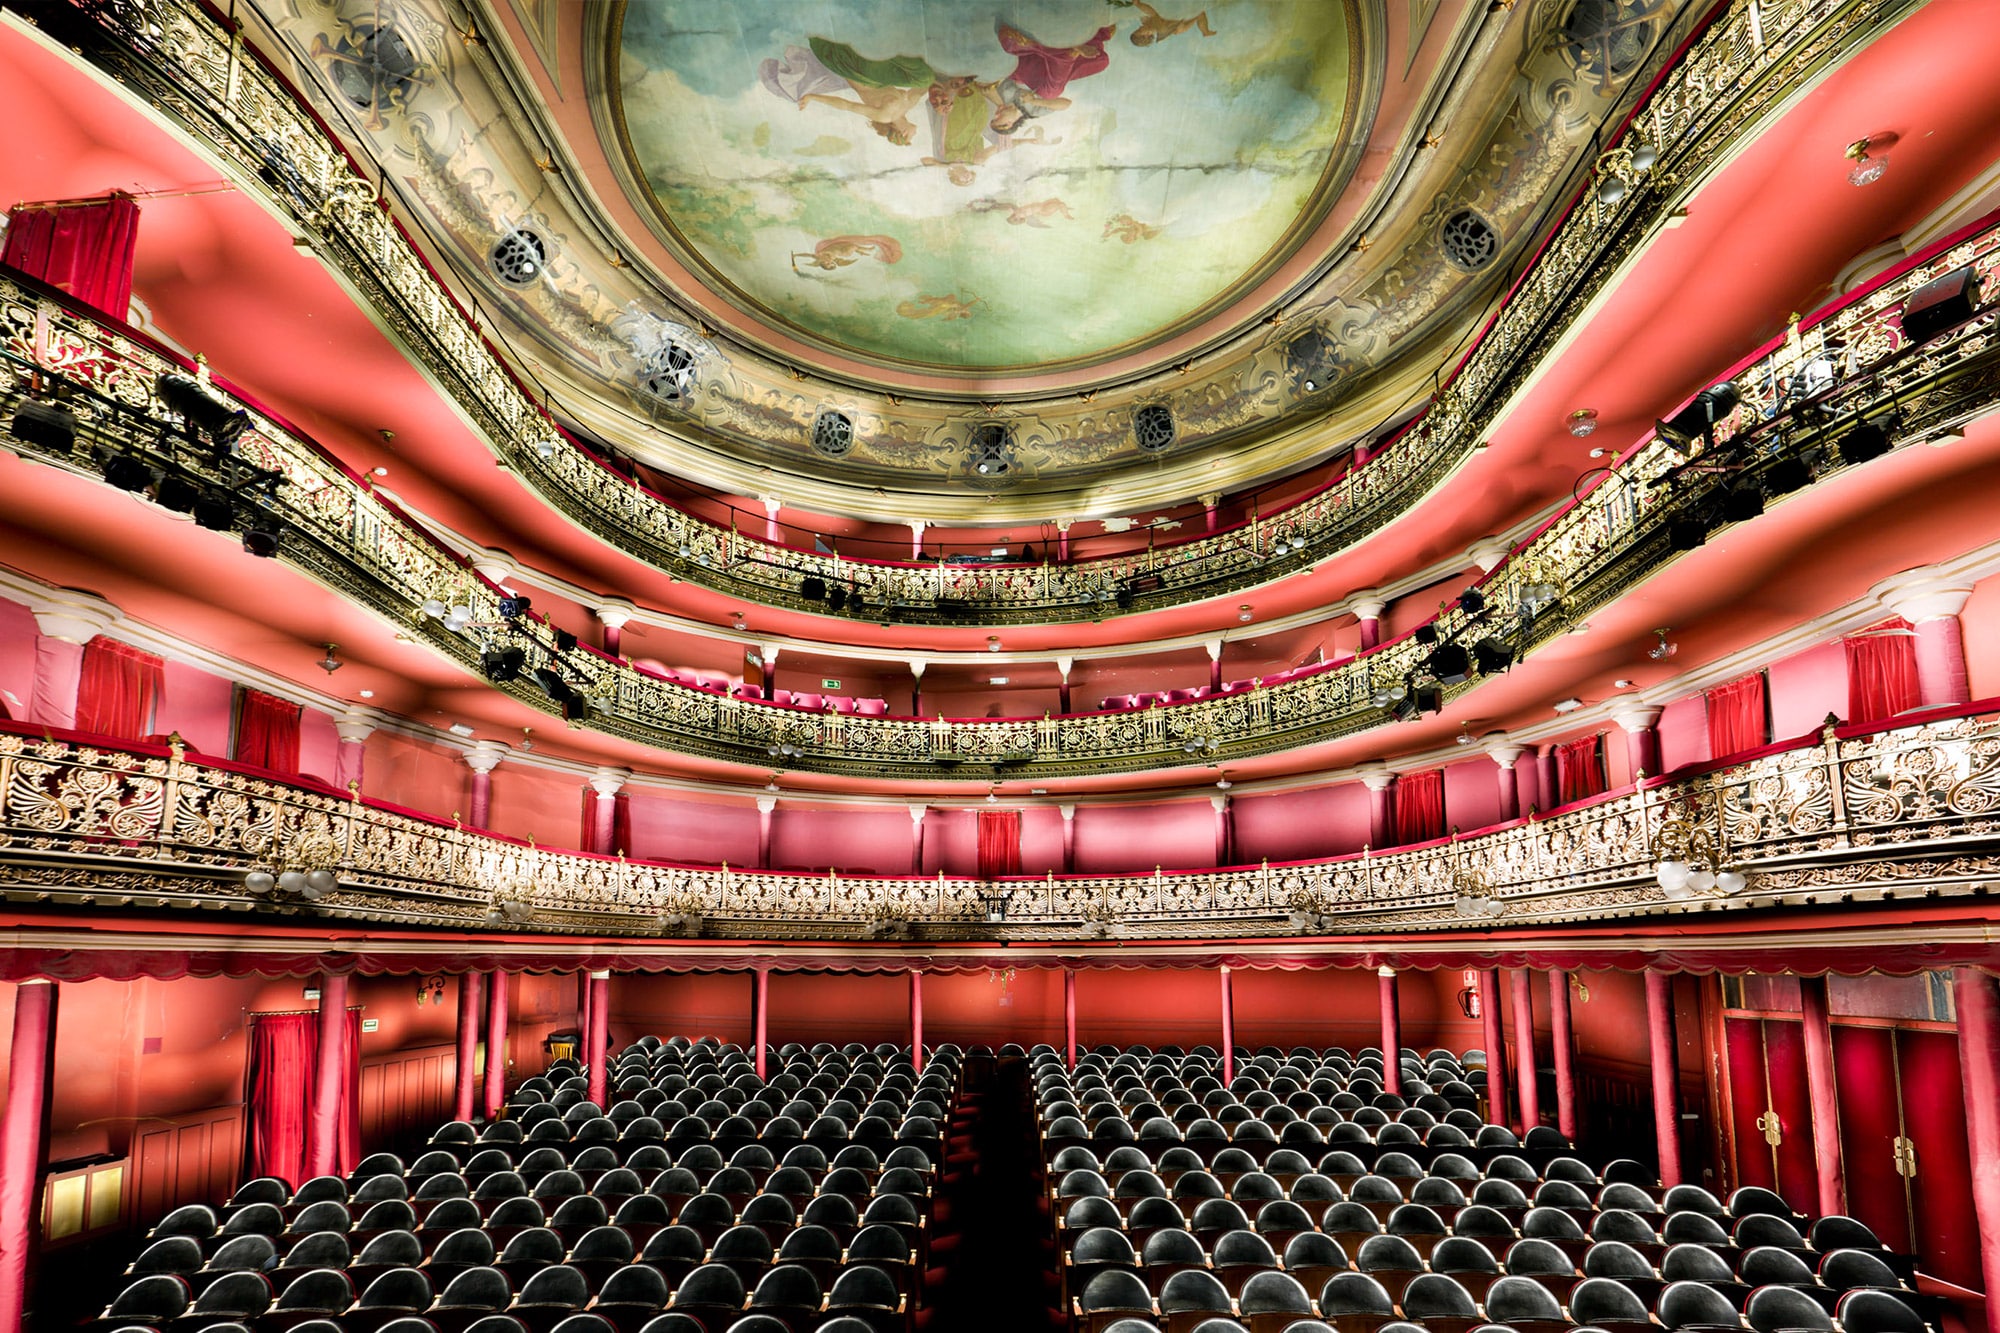 6.Teatros en Madrid; Pasillos internos que albergan la anticipación antes del espectáculo, con murmullos emocionados y el bullicio de los últimos preparativos.